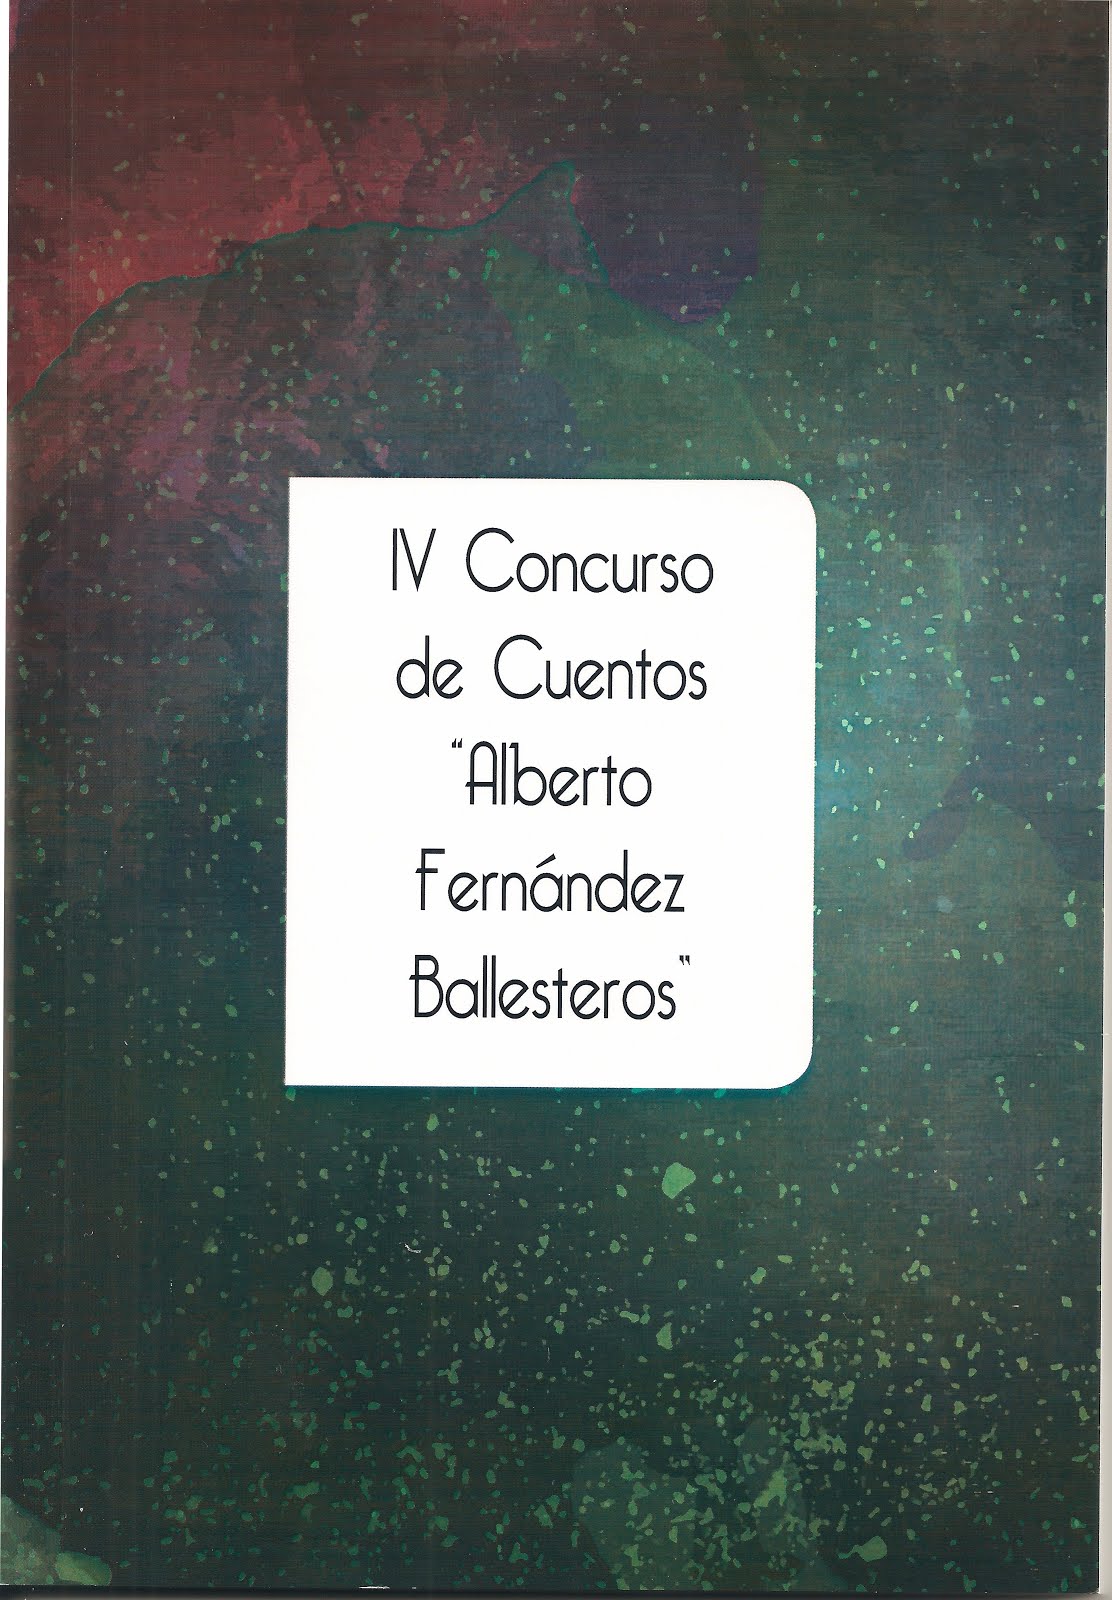 IV Concurso Cientos Alberto Fernández Ballesteros